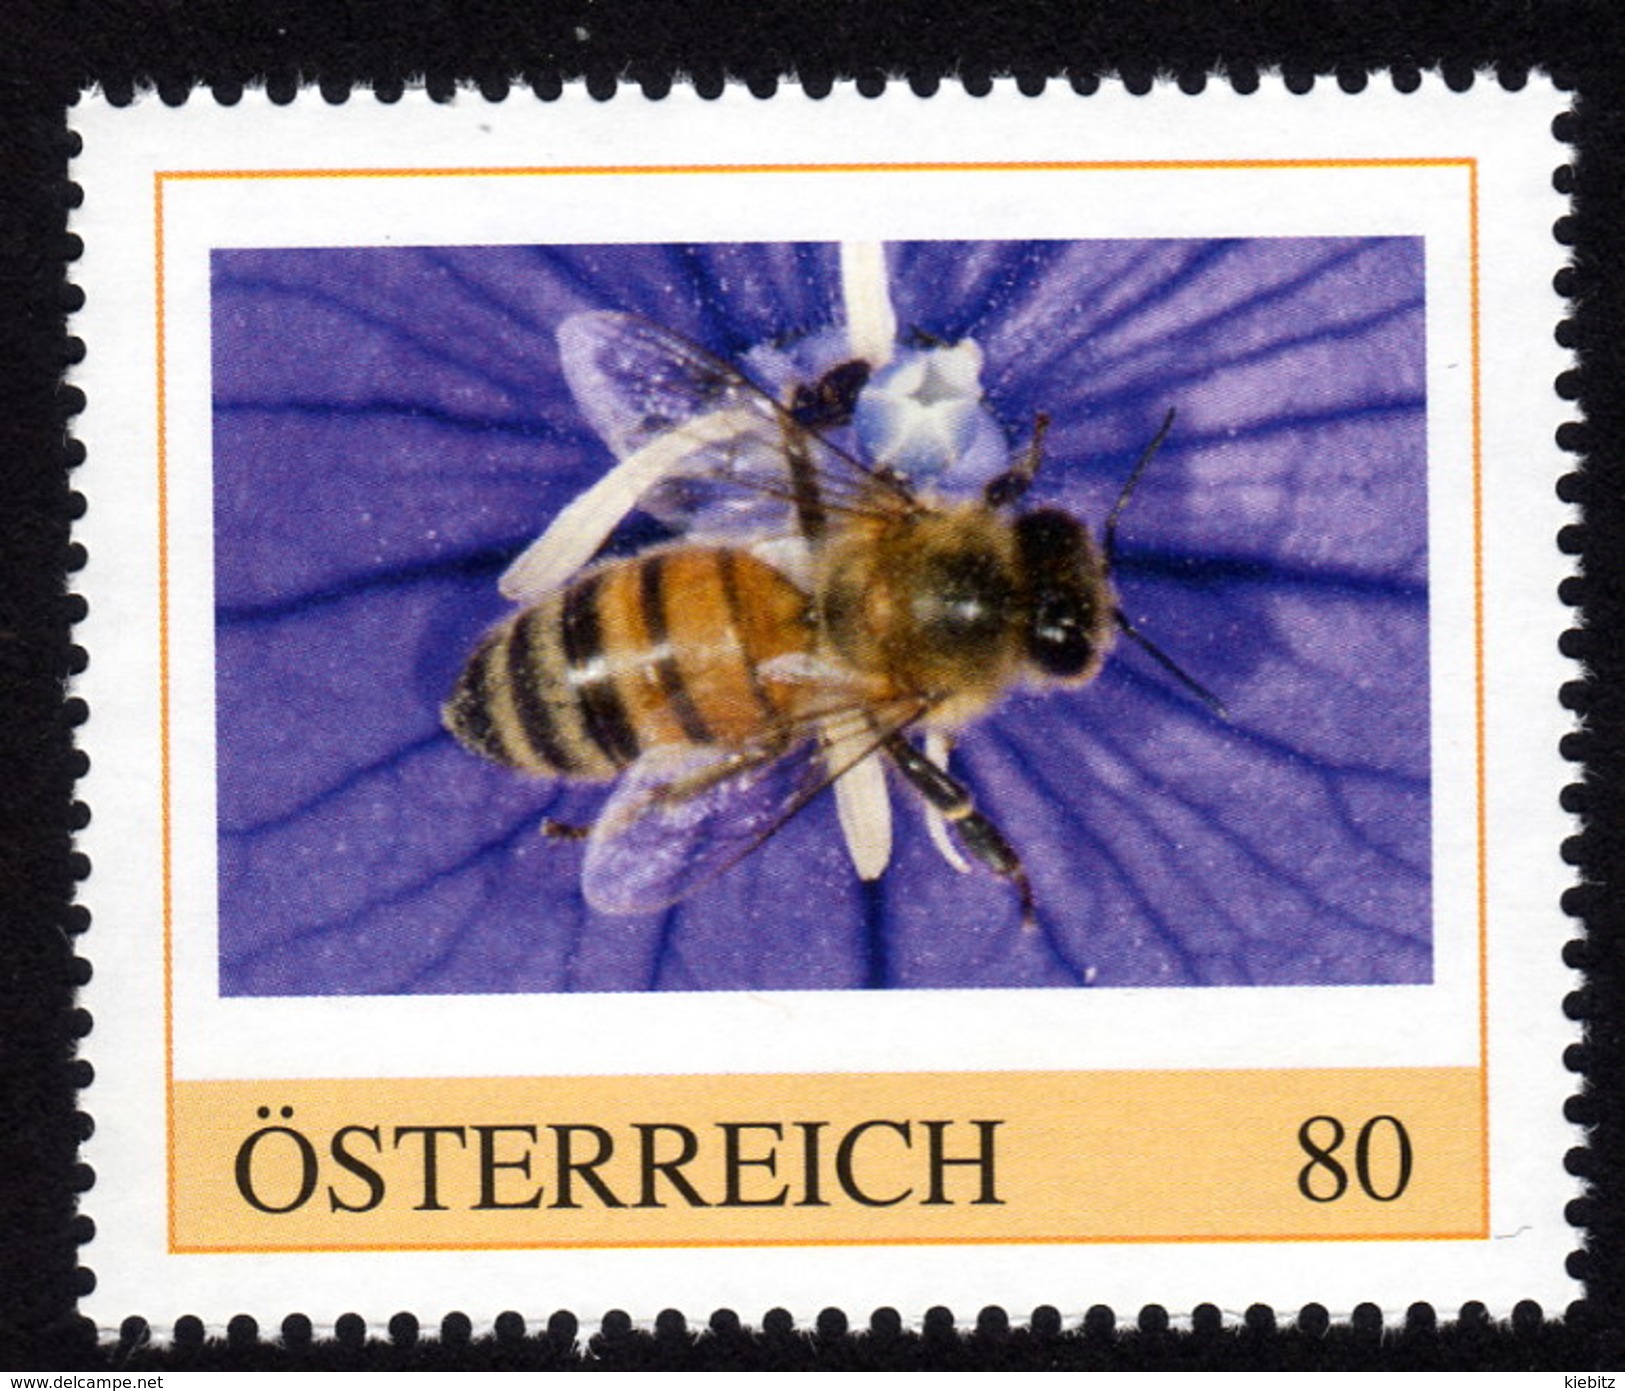 ÖSTERREICH 2015 ** Biene, Honigbiene, Honeybee - PM Personalized Stamp MNH - Honeybees